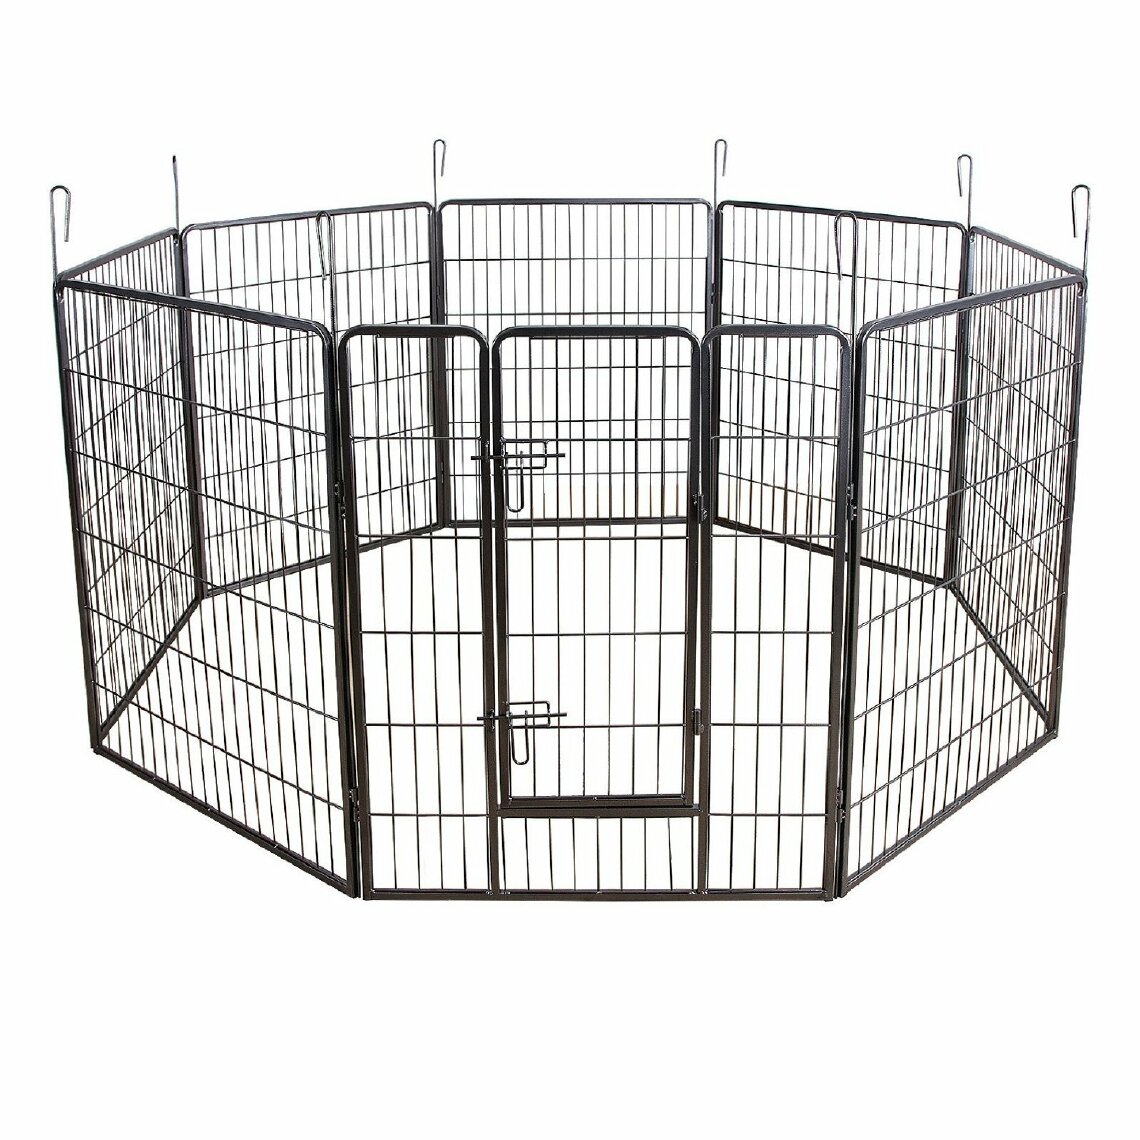 Helloshop26 - Parc enclos cage pour chiens chiots animaux de compagnie 163 x 163 cm gris 3712020 - Clôture pour chien